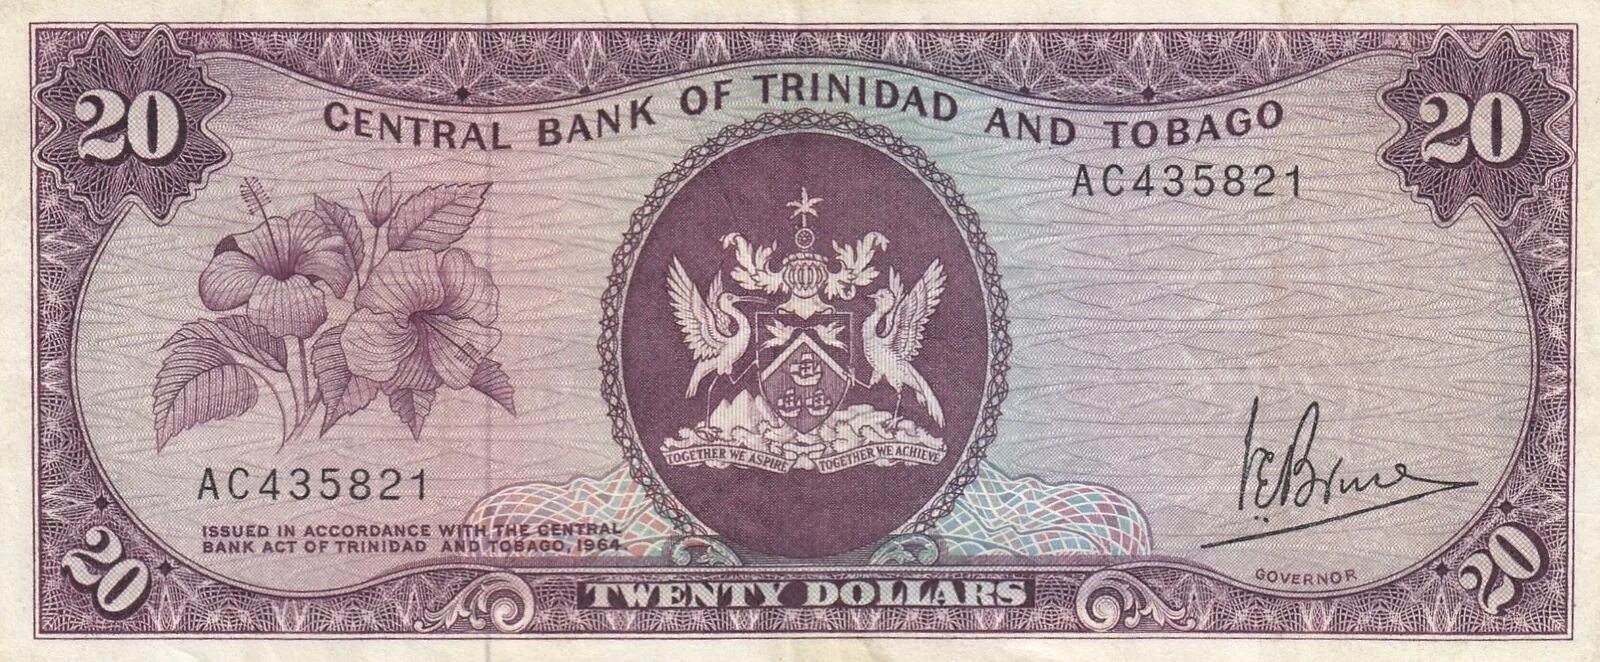 20 Долларов Тринидад и Тобаго 1964. 100 Долларов Тринидад и Тобаго 1964. Central Bank of Trinidad and Tobago. 20 Долларов Тринидад и Тобаго.